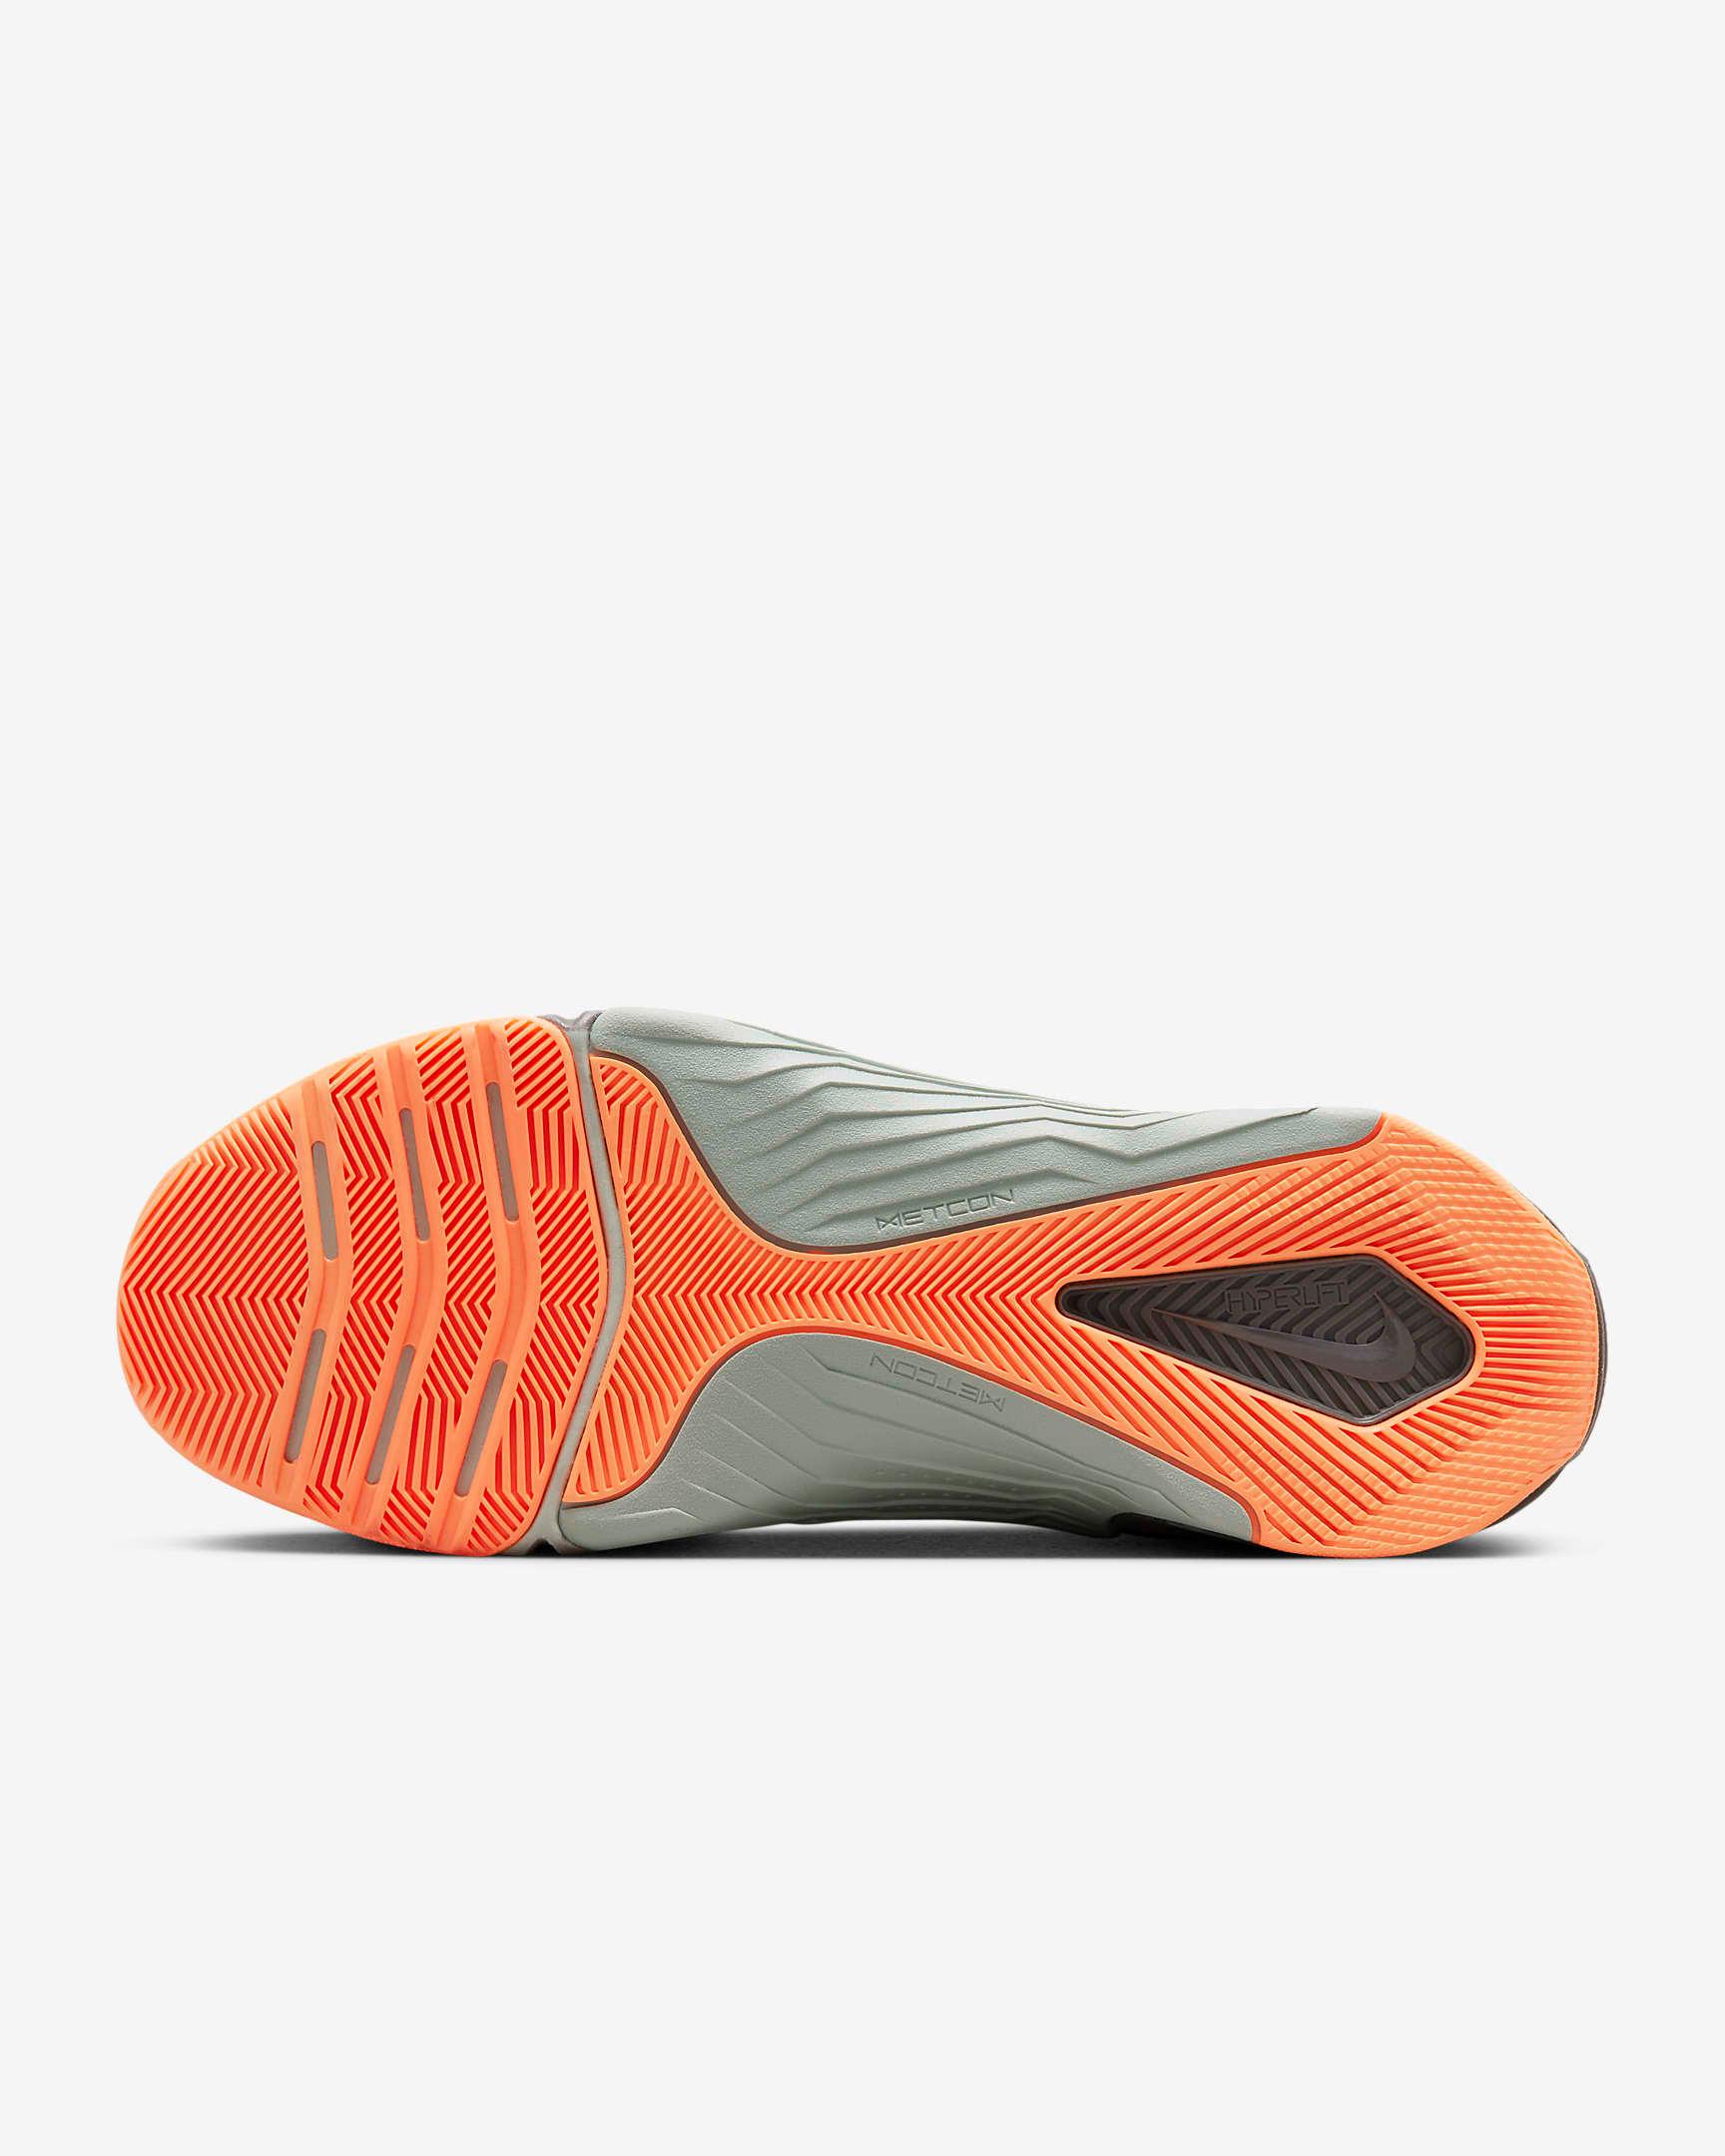 Giày Nike Metcon 8 AMP Men Training Shoes #Atomic Orange - Kallos Vietnam